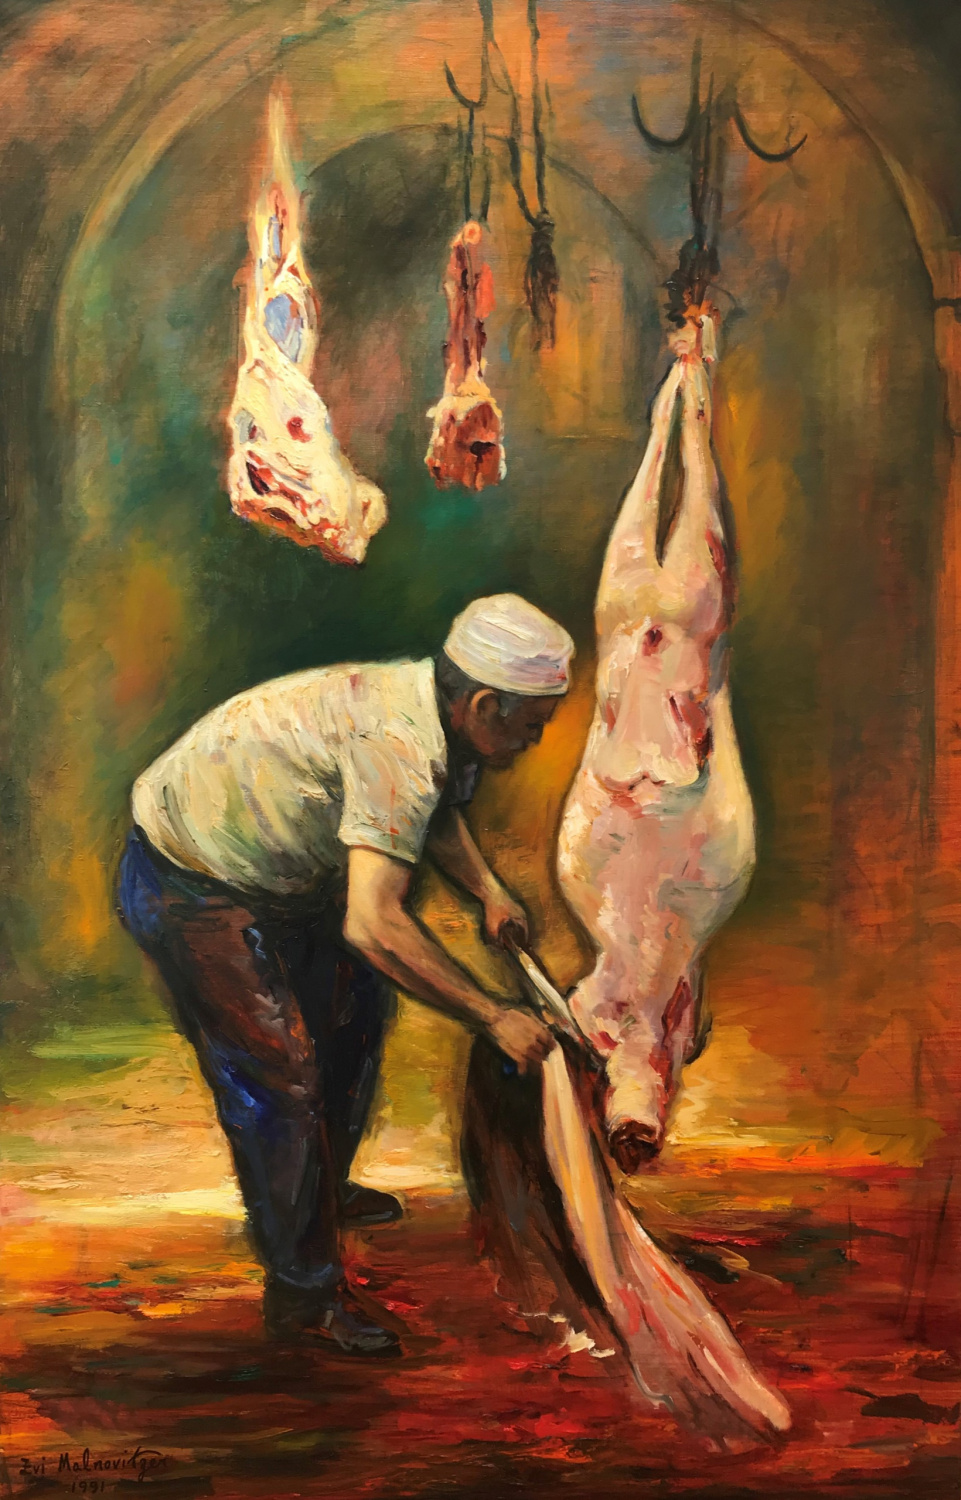 Zvi Malnovitzer - Butcher - Israeli artist - Israeli art - Kings Gallery - Jerusalem.